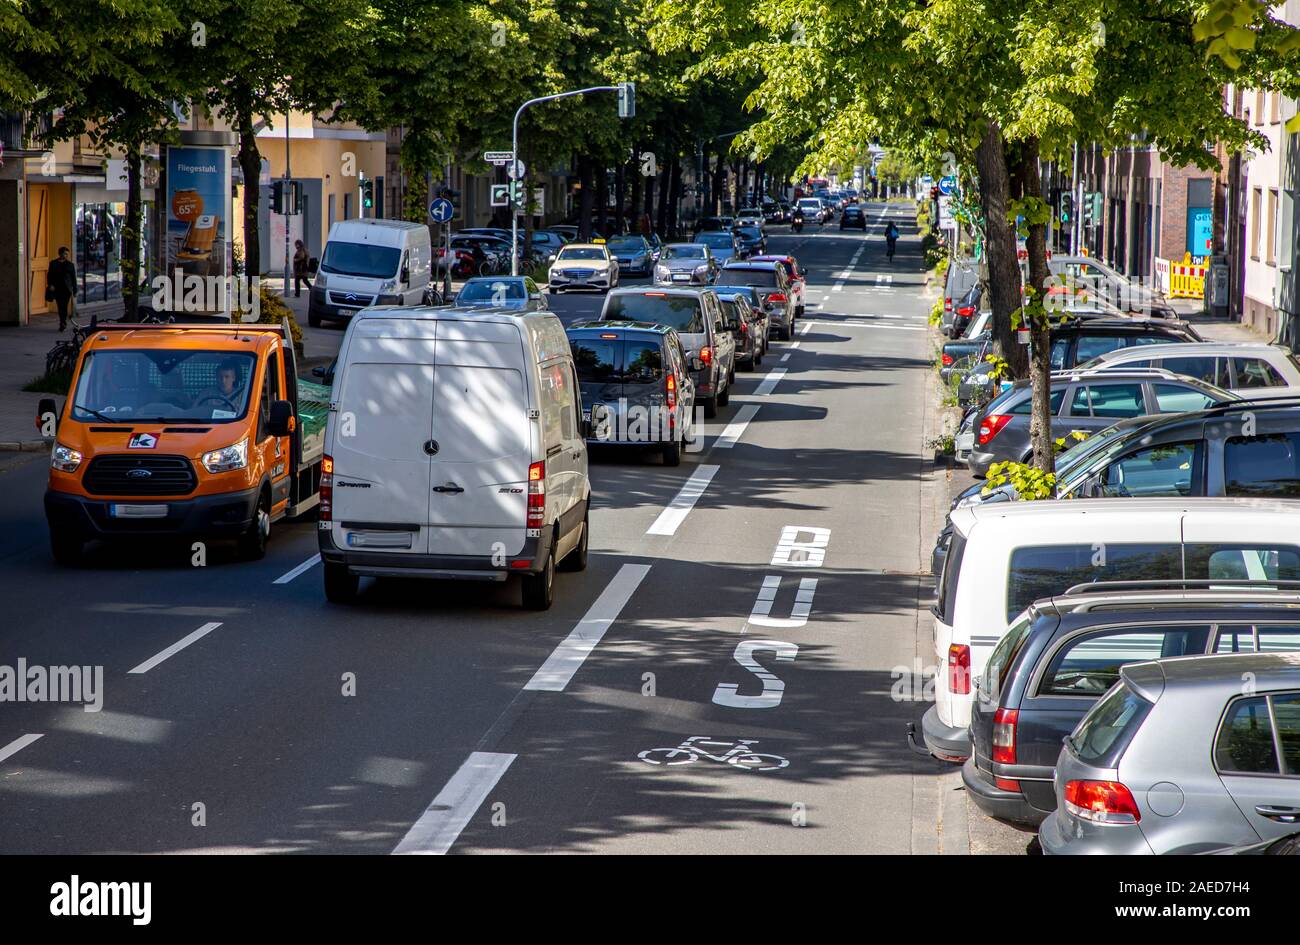 Düsseldorf, ambientales lane Merowinger Street, en el distrito de estafarle, sólo taxis, ciclistas, autobuses y e-cars están autorizados a conducir en el reservado Foto de stock